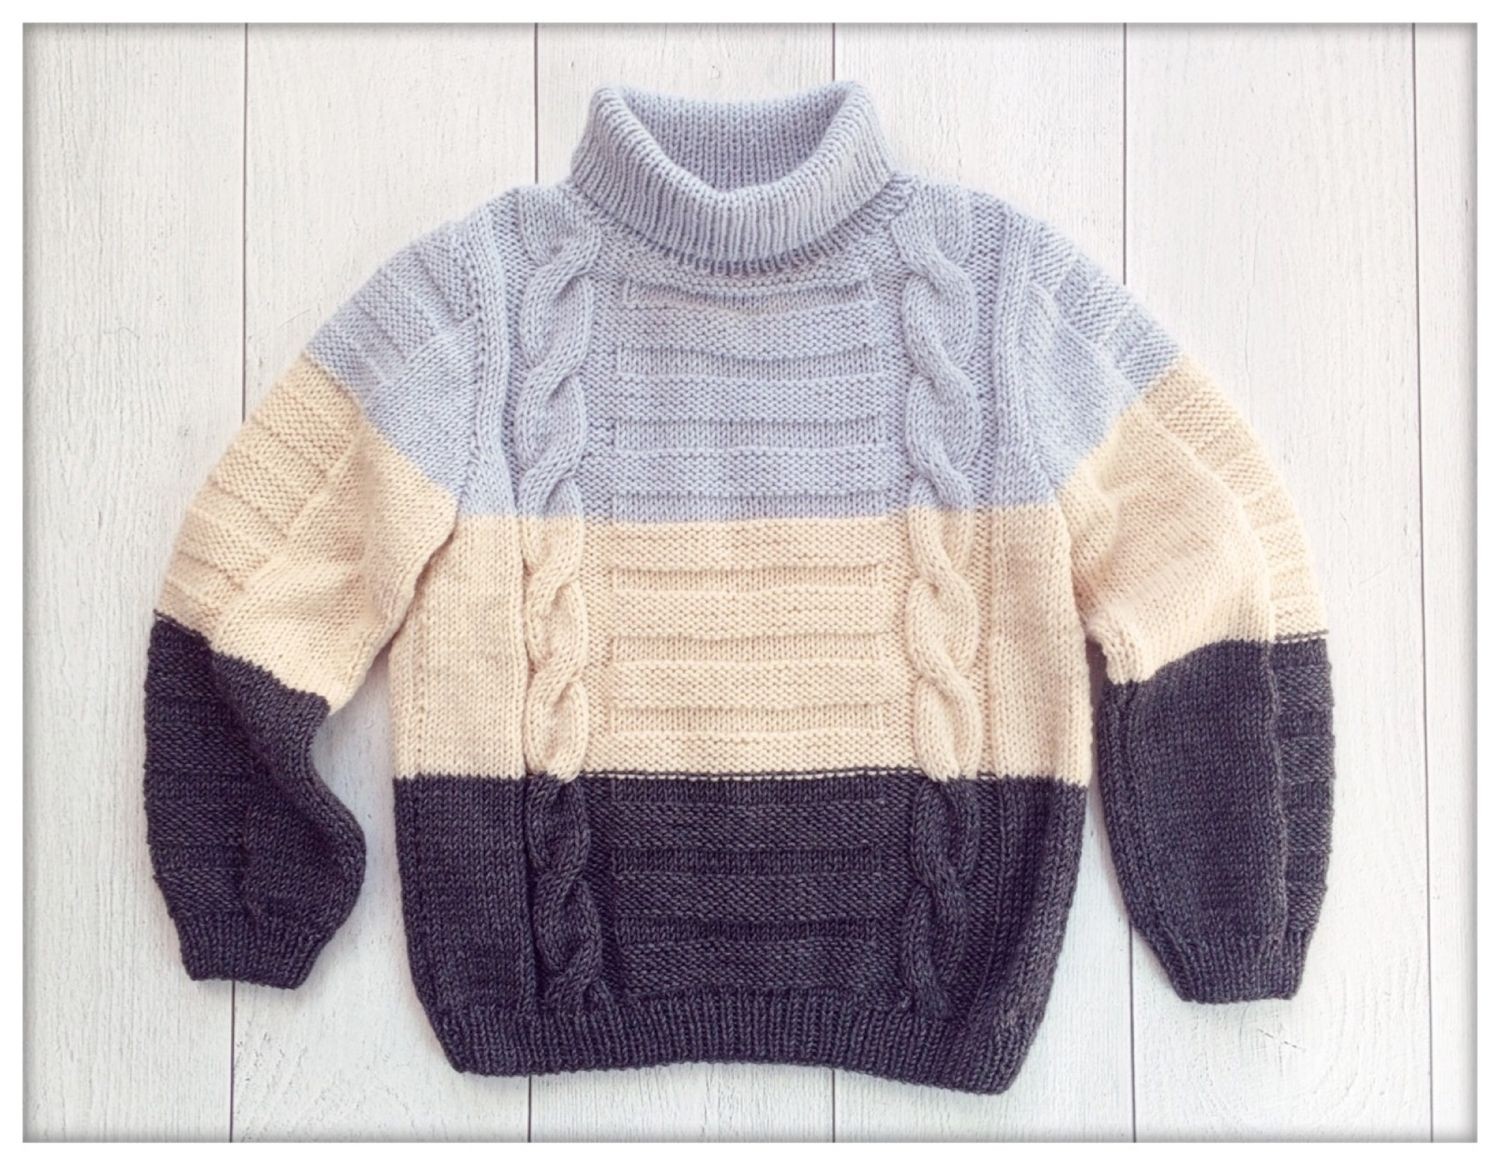 Джемпер, свитер, пуловер — что это?